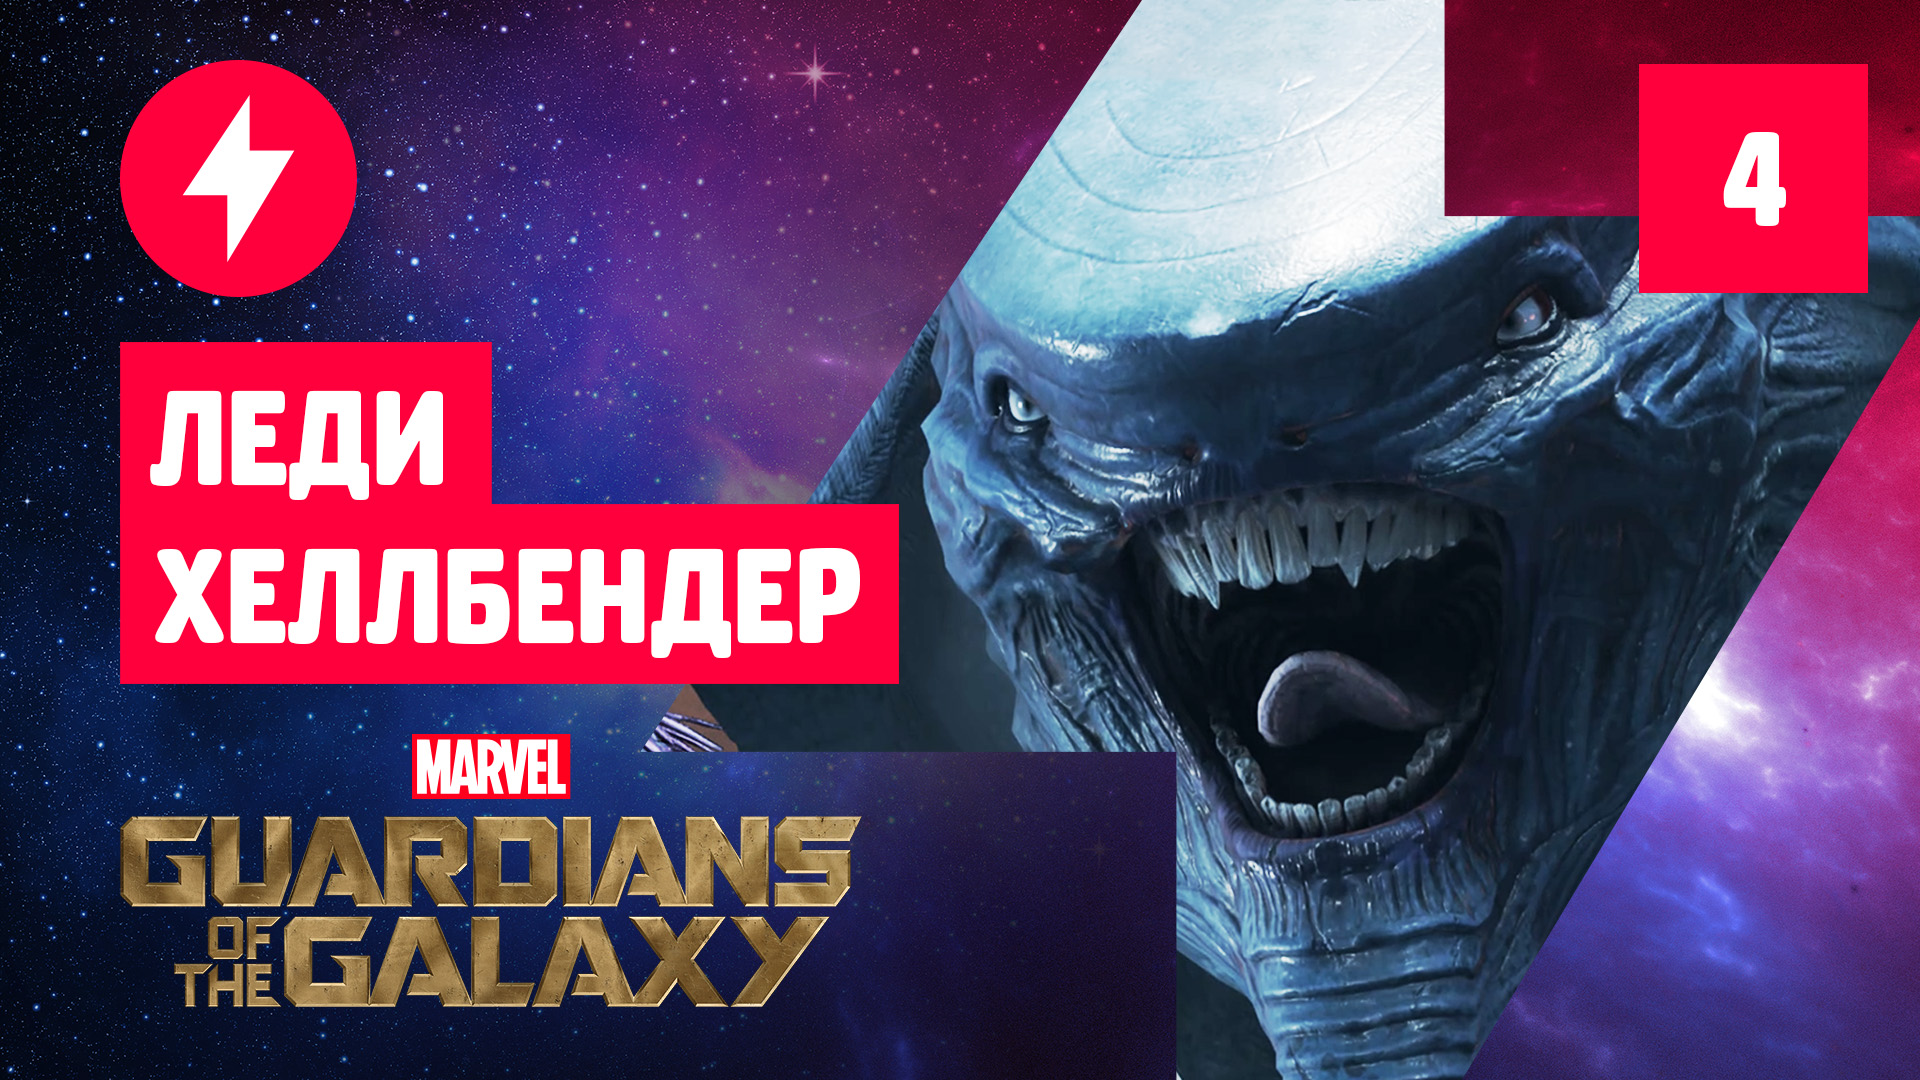 Прохождение Marvel's Guardians of the Galaxy — Часть 4: Леди Хеллбендер